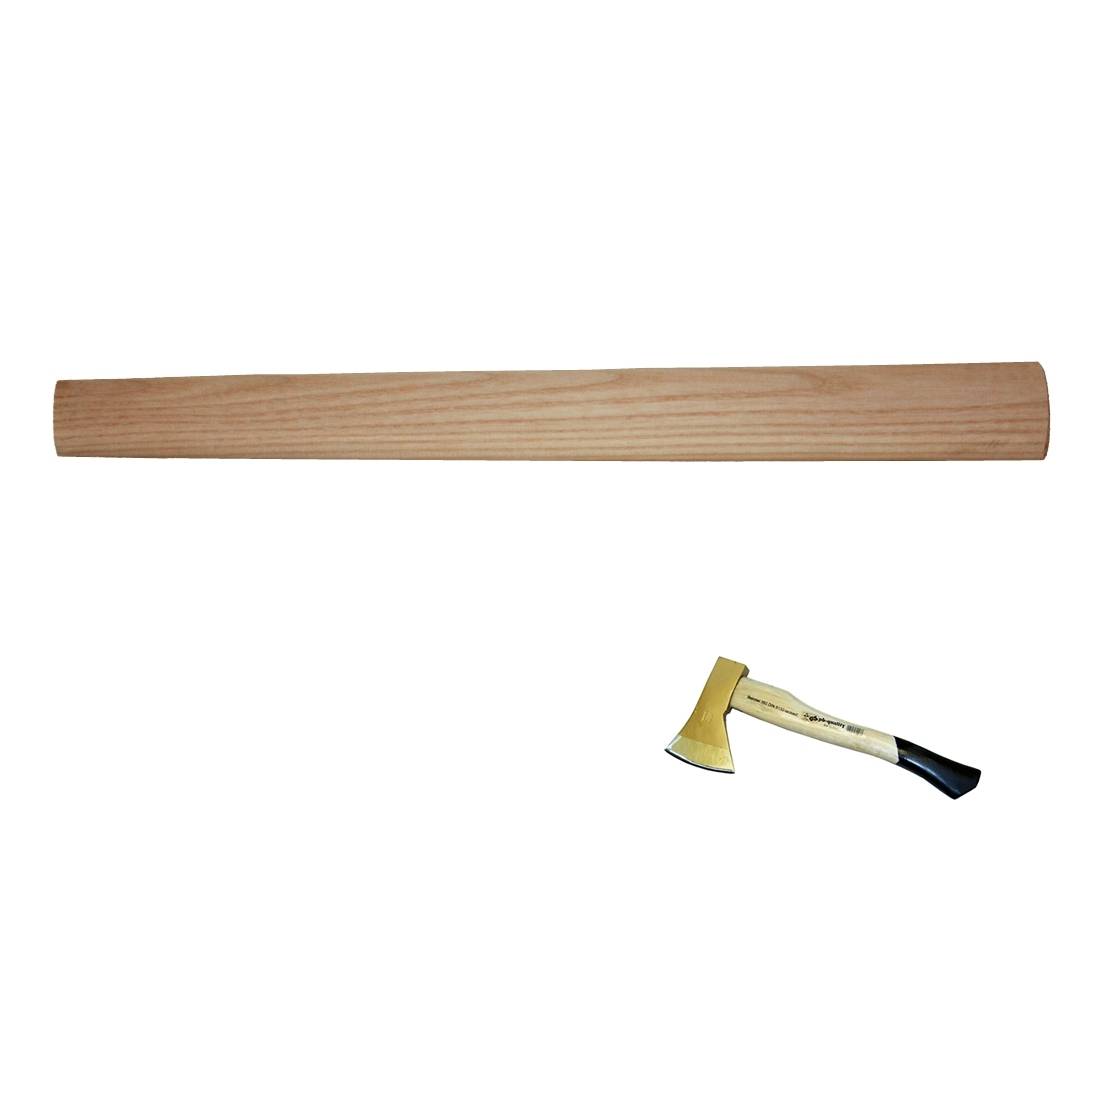 Beilstiele 350 - 400 mm Eschenholz, Kuhfußform